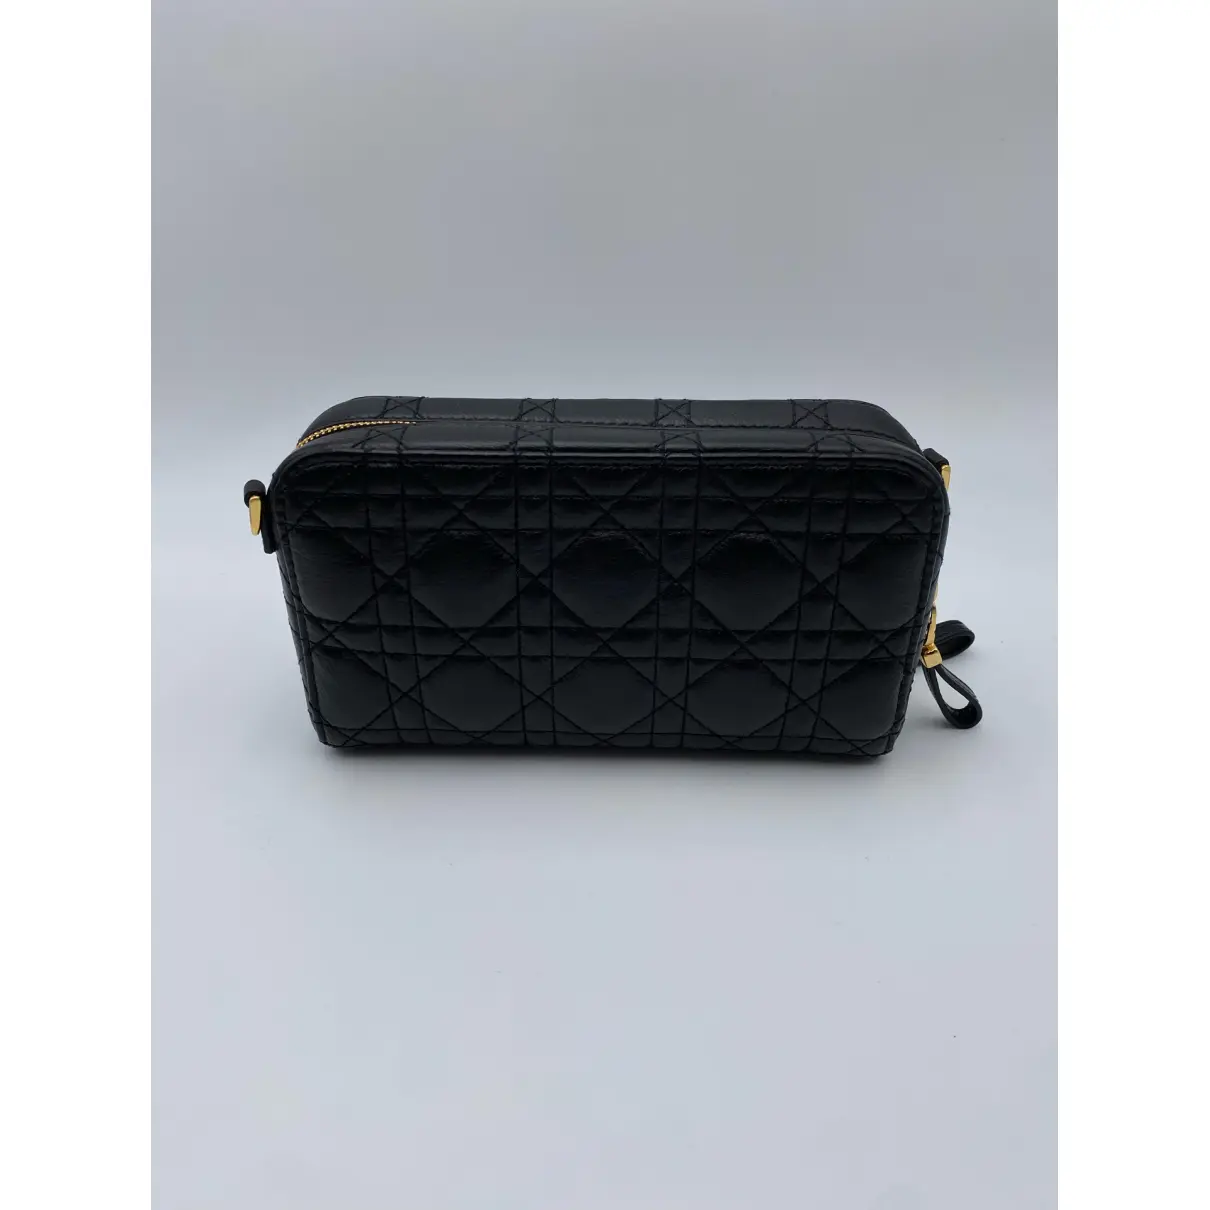 Buy Dior Dior Caro leather handbag online